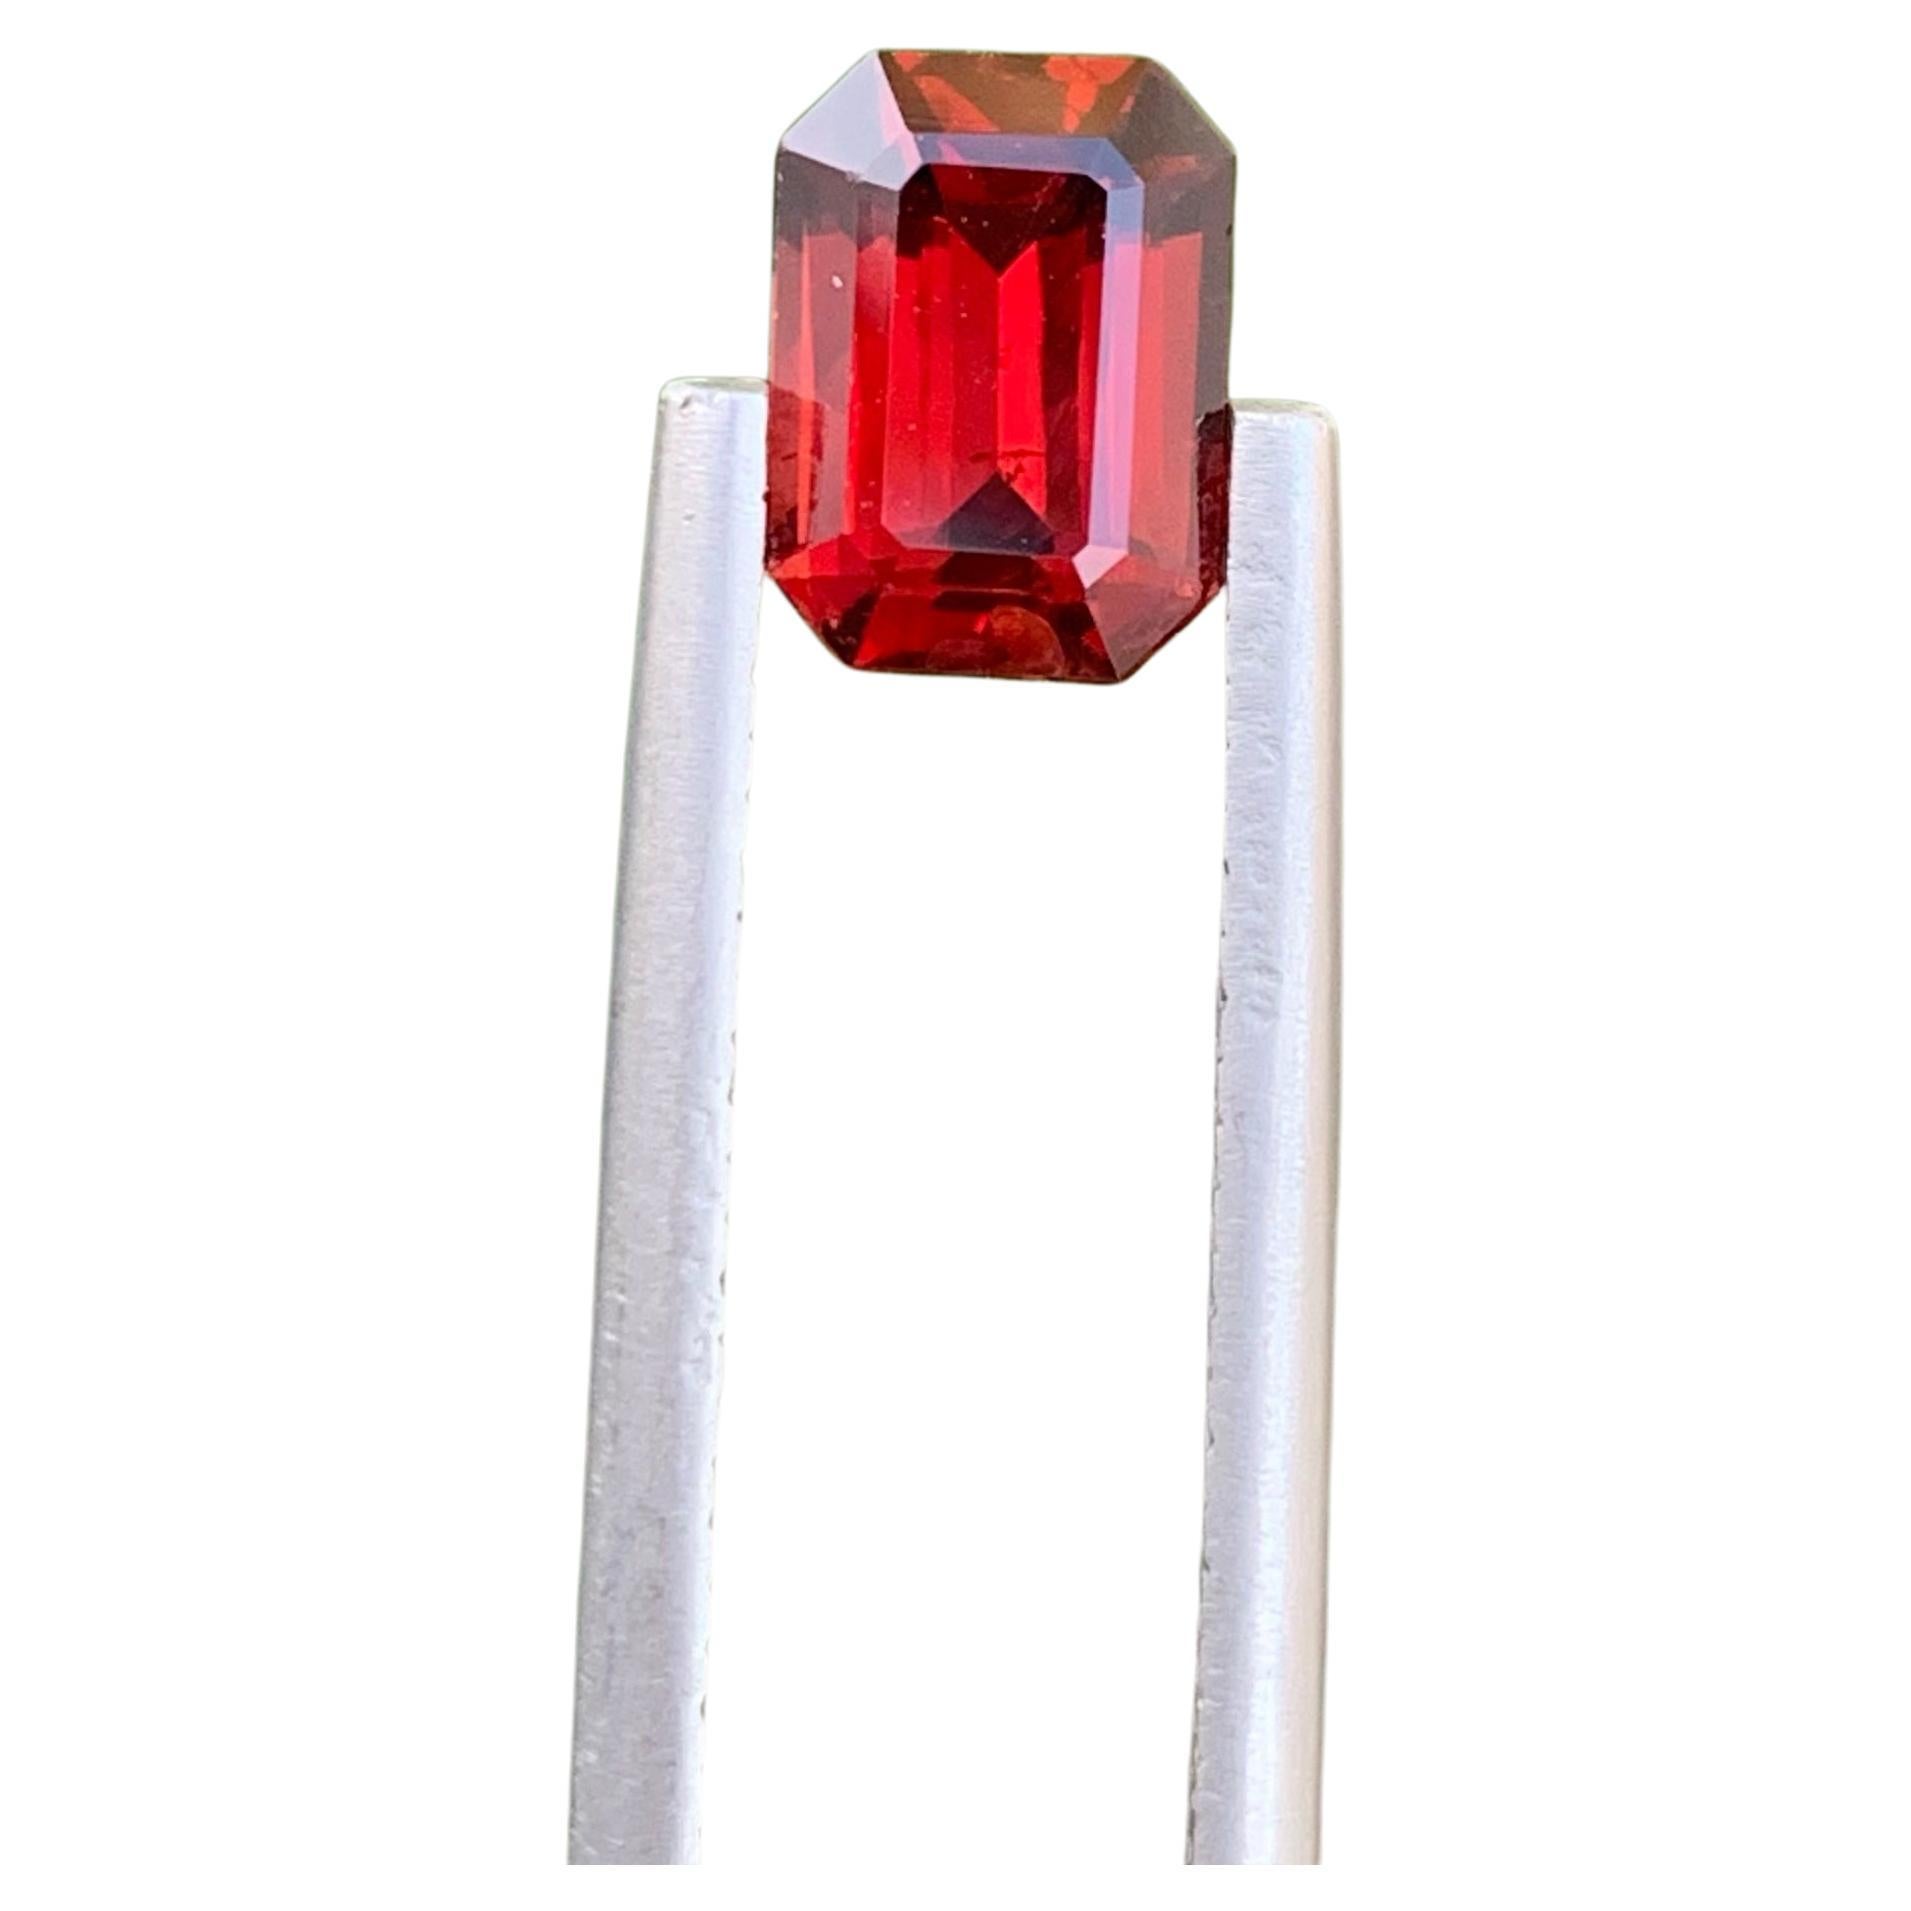 Extraordinary Red Rhodolite Garnet 1.80 carats Emerald Cut Madagascar's Gemstone For Sale